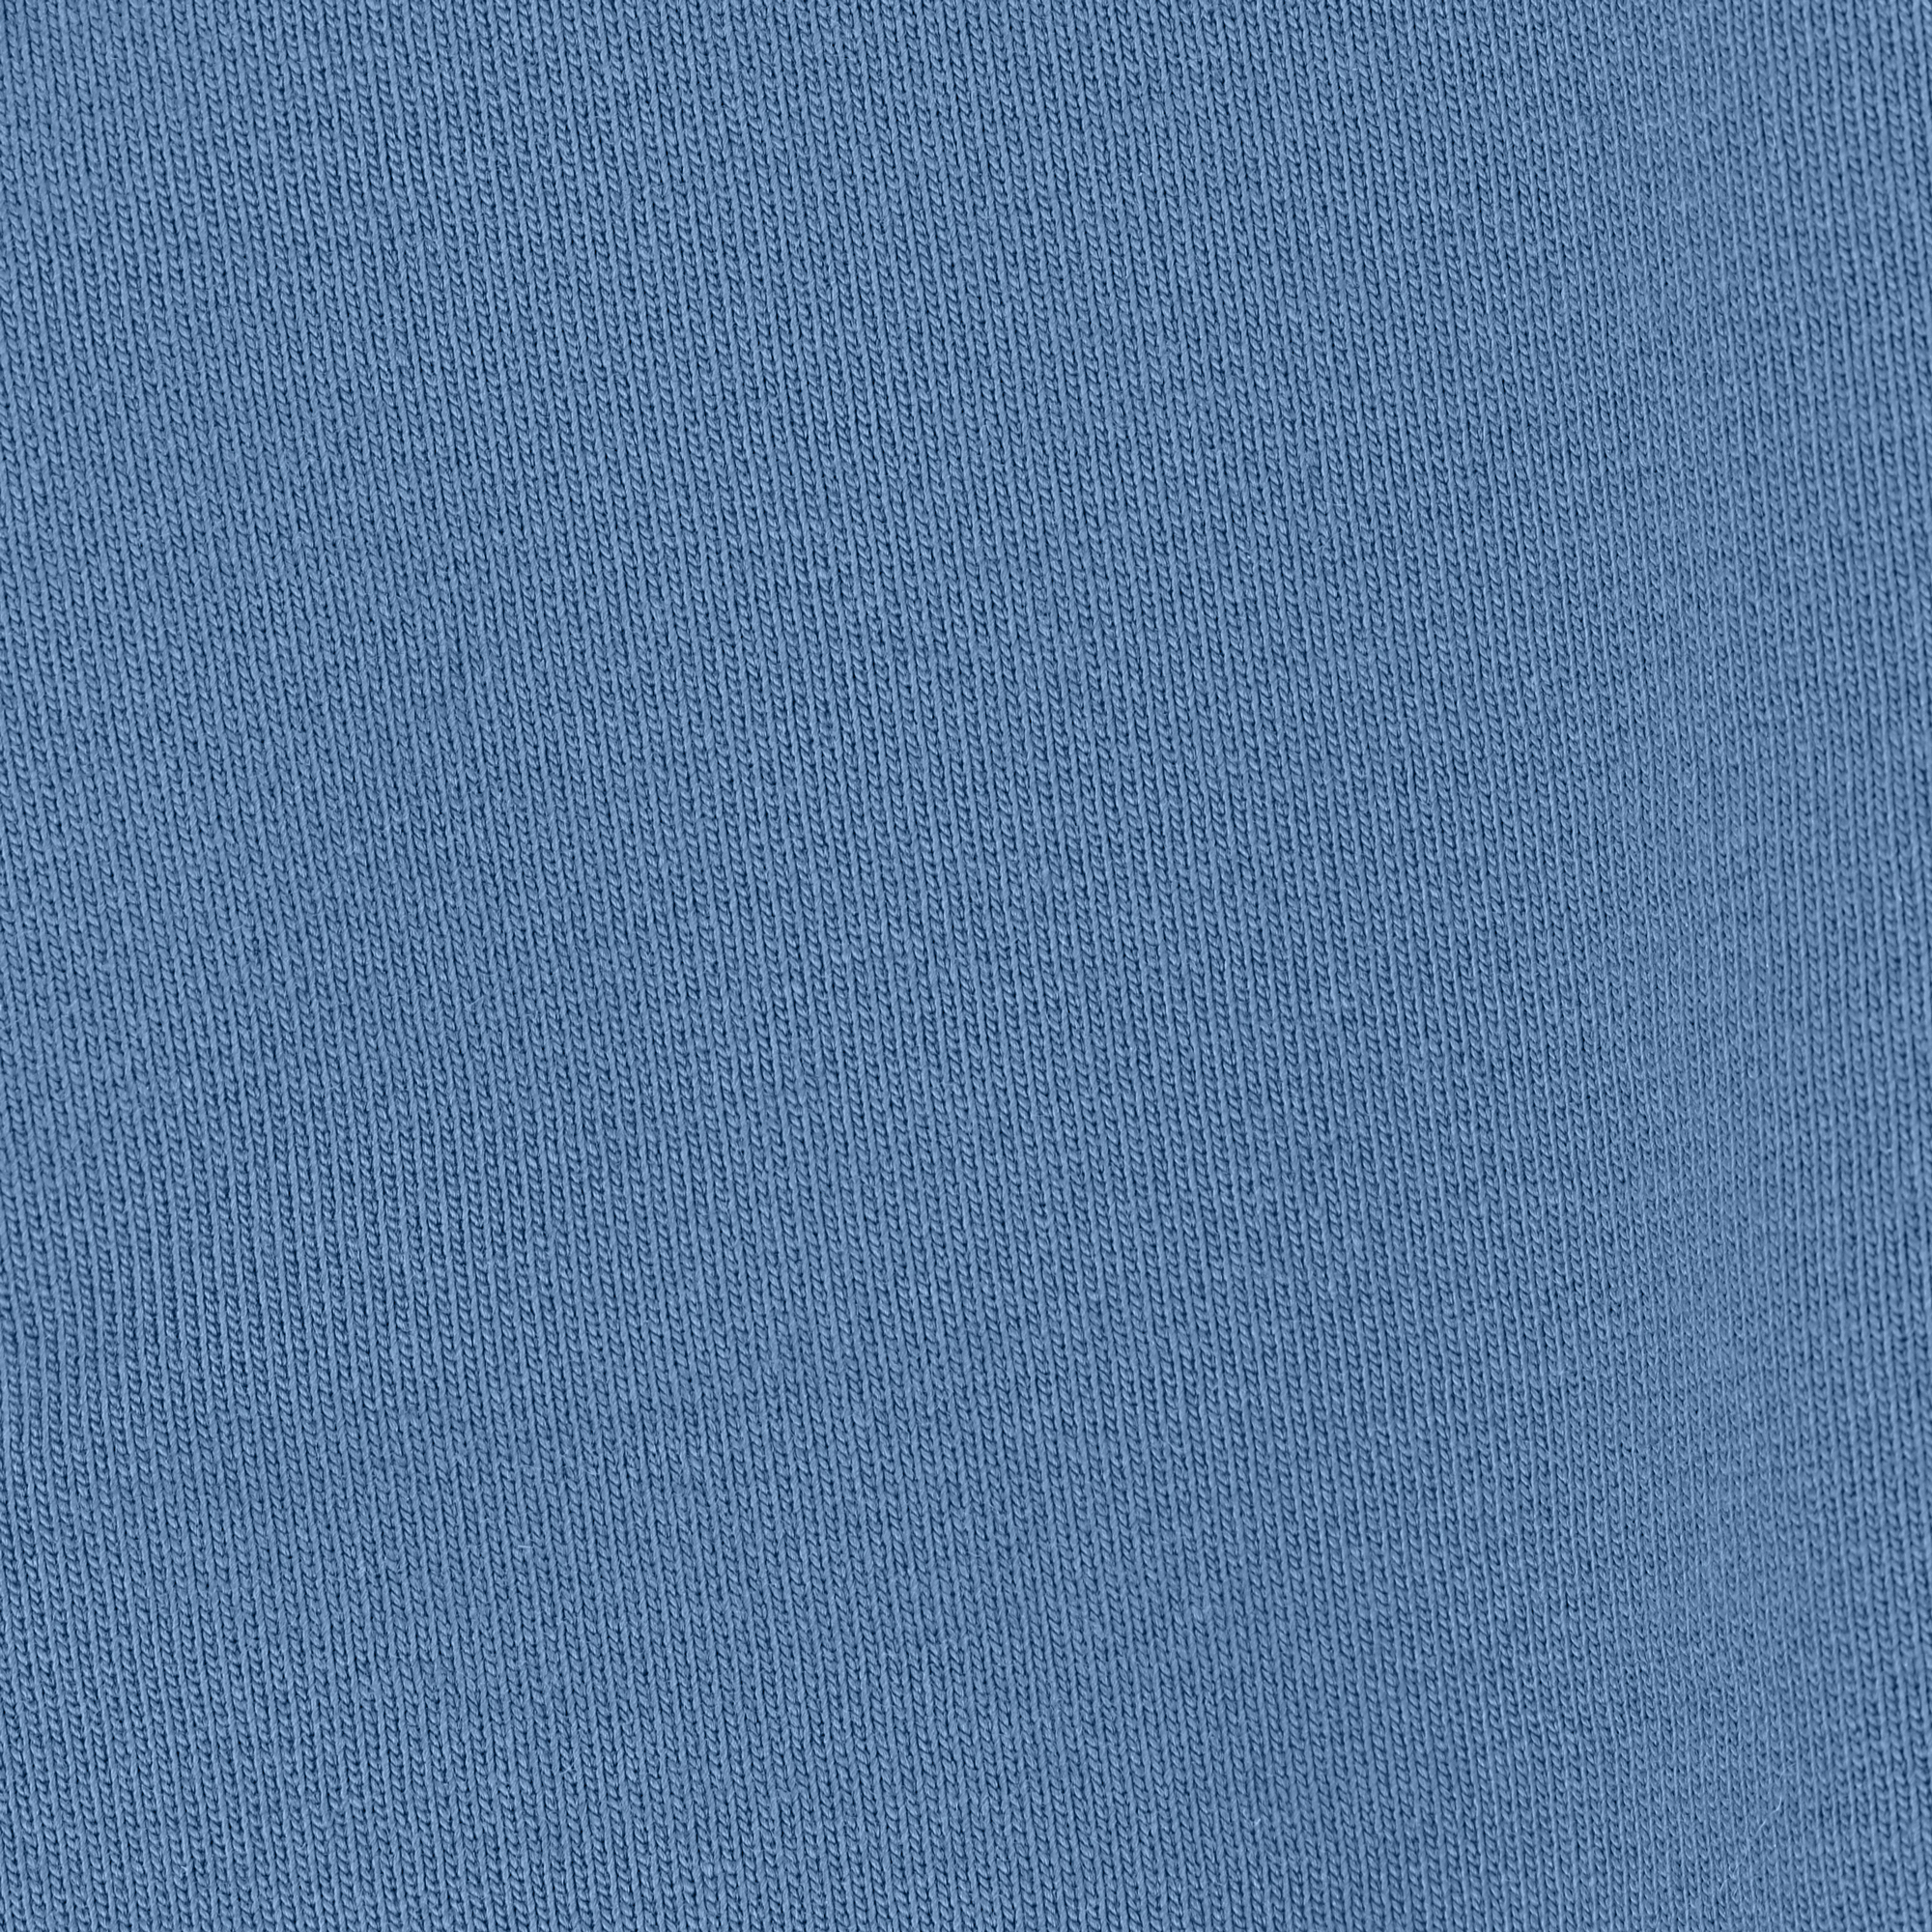 Мужская толстовка Birlik голубая с капюшоном, цвет голубой, размер XL - фото 2